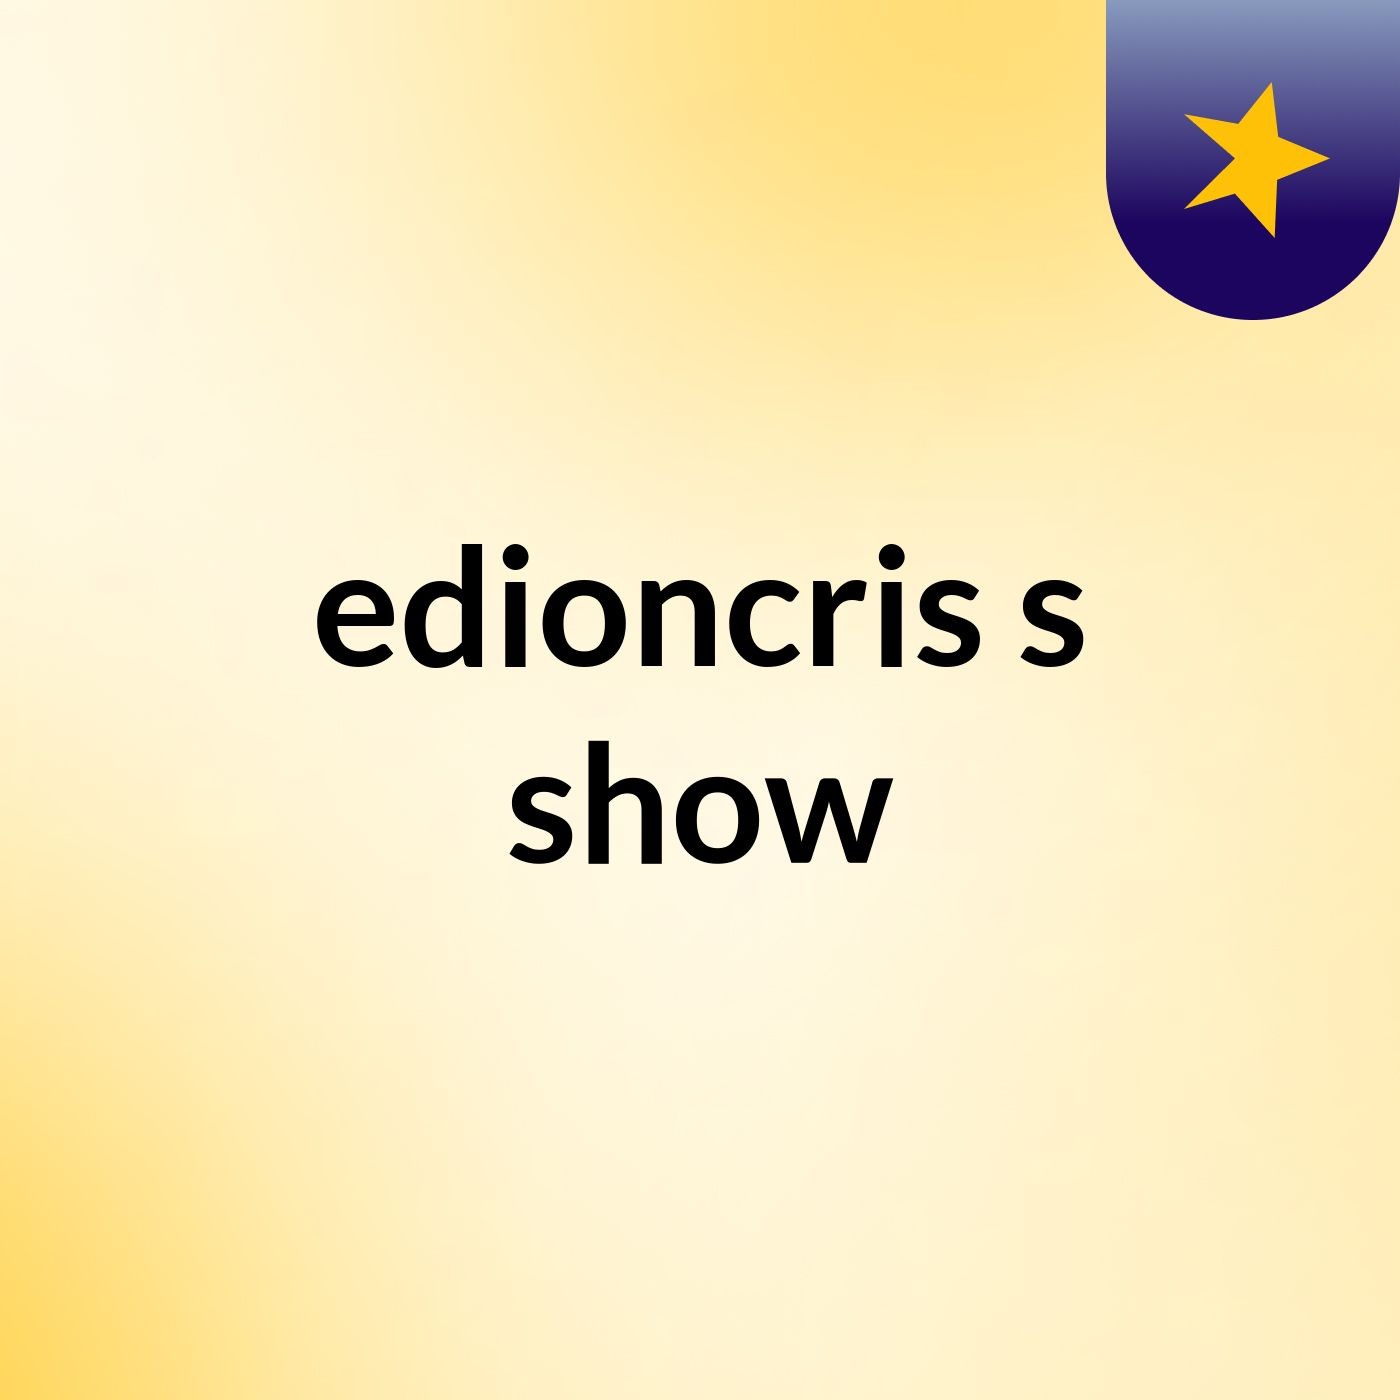 edioncris's show